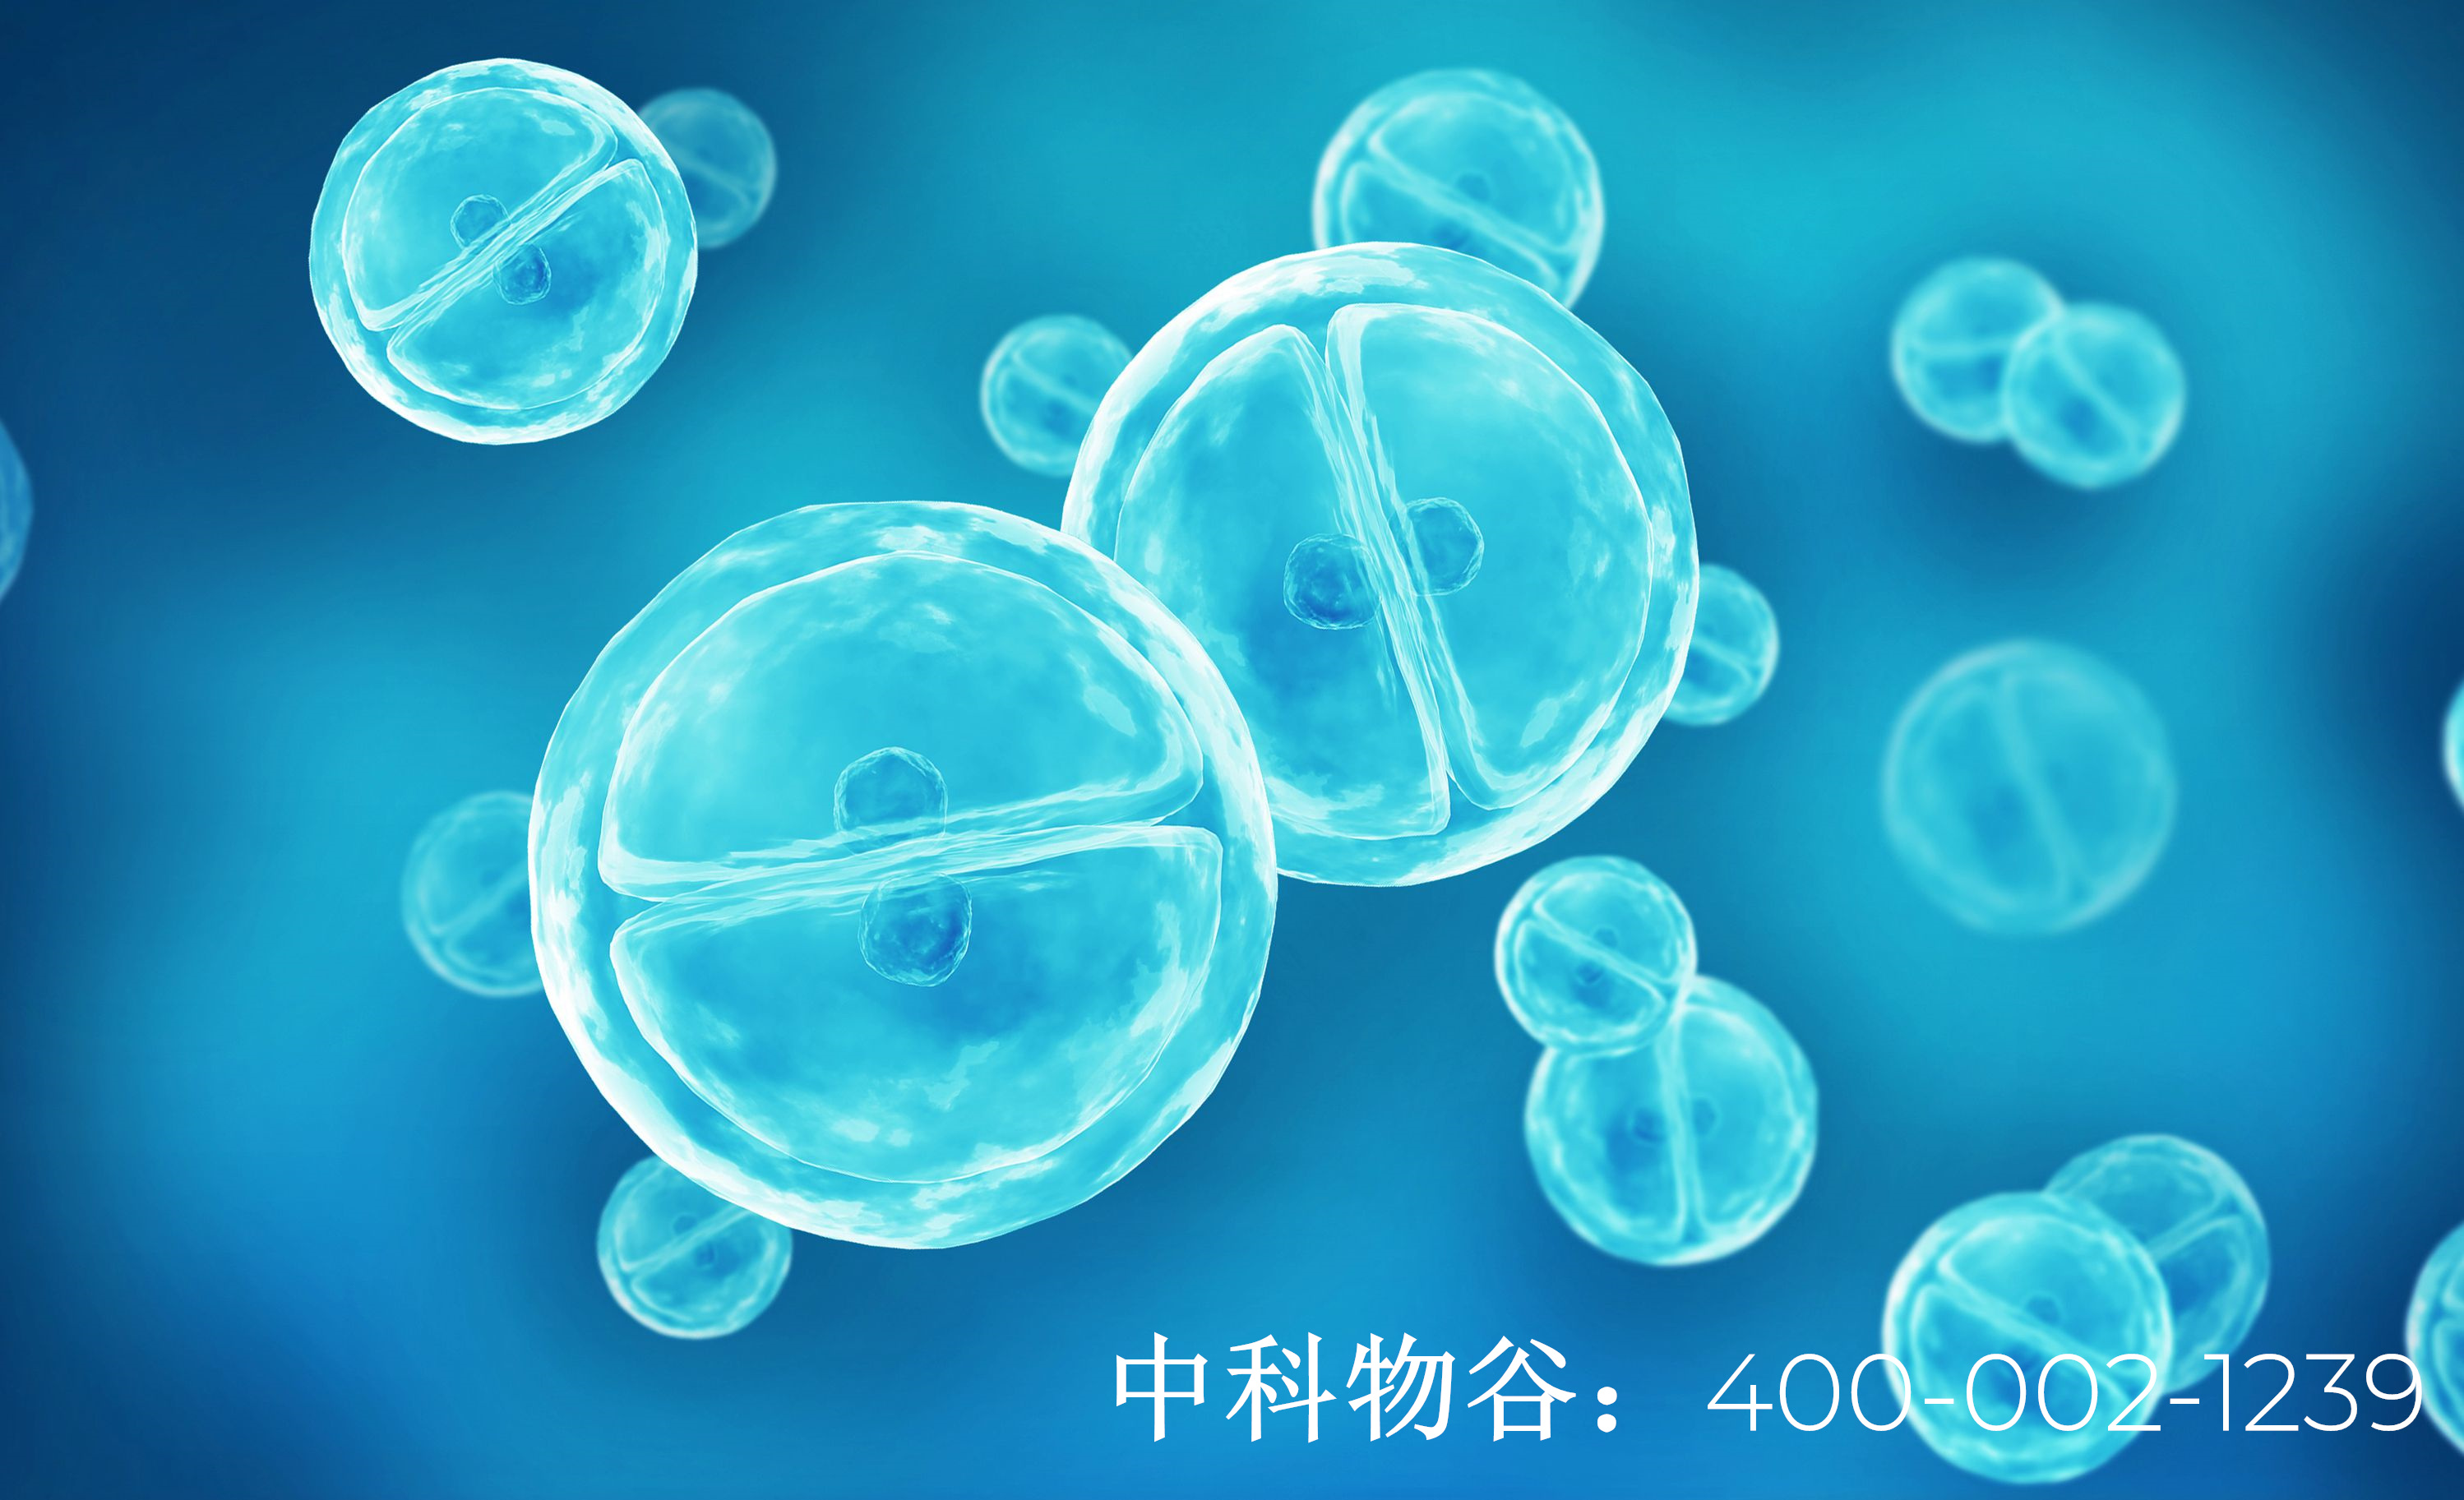 中科物谷NK免疫疗法治疗卵巢癌